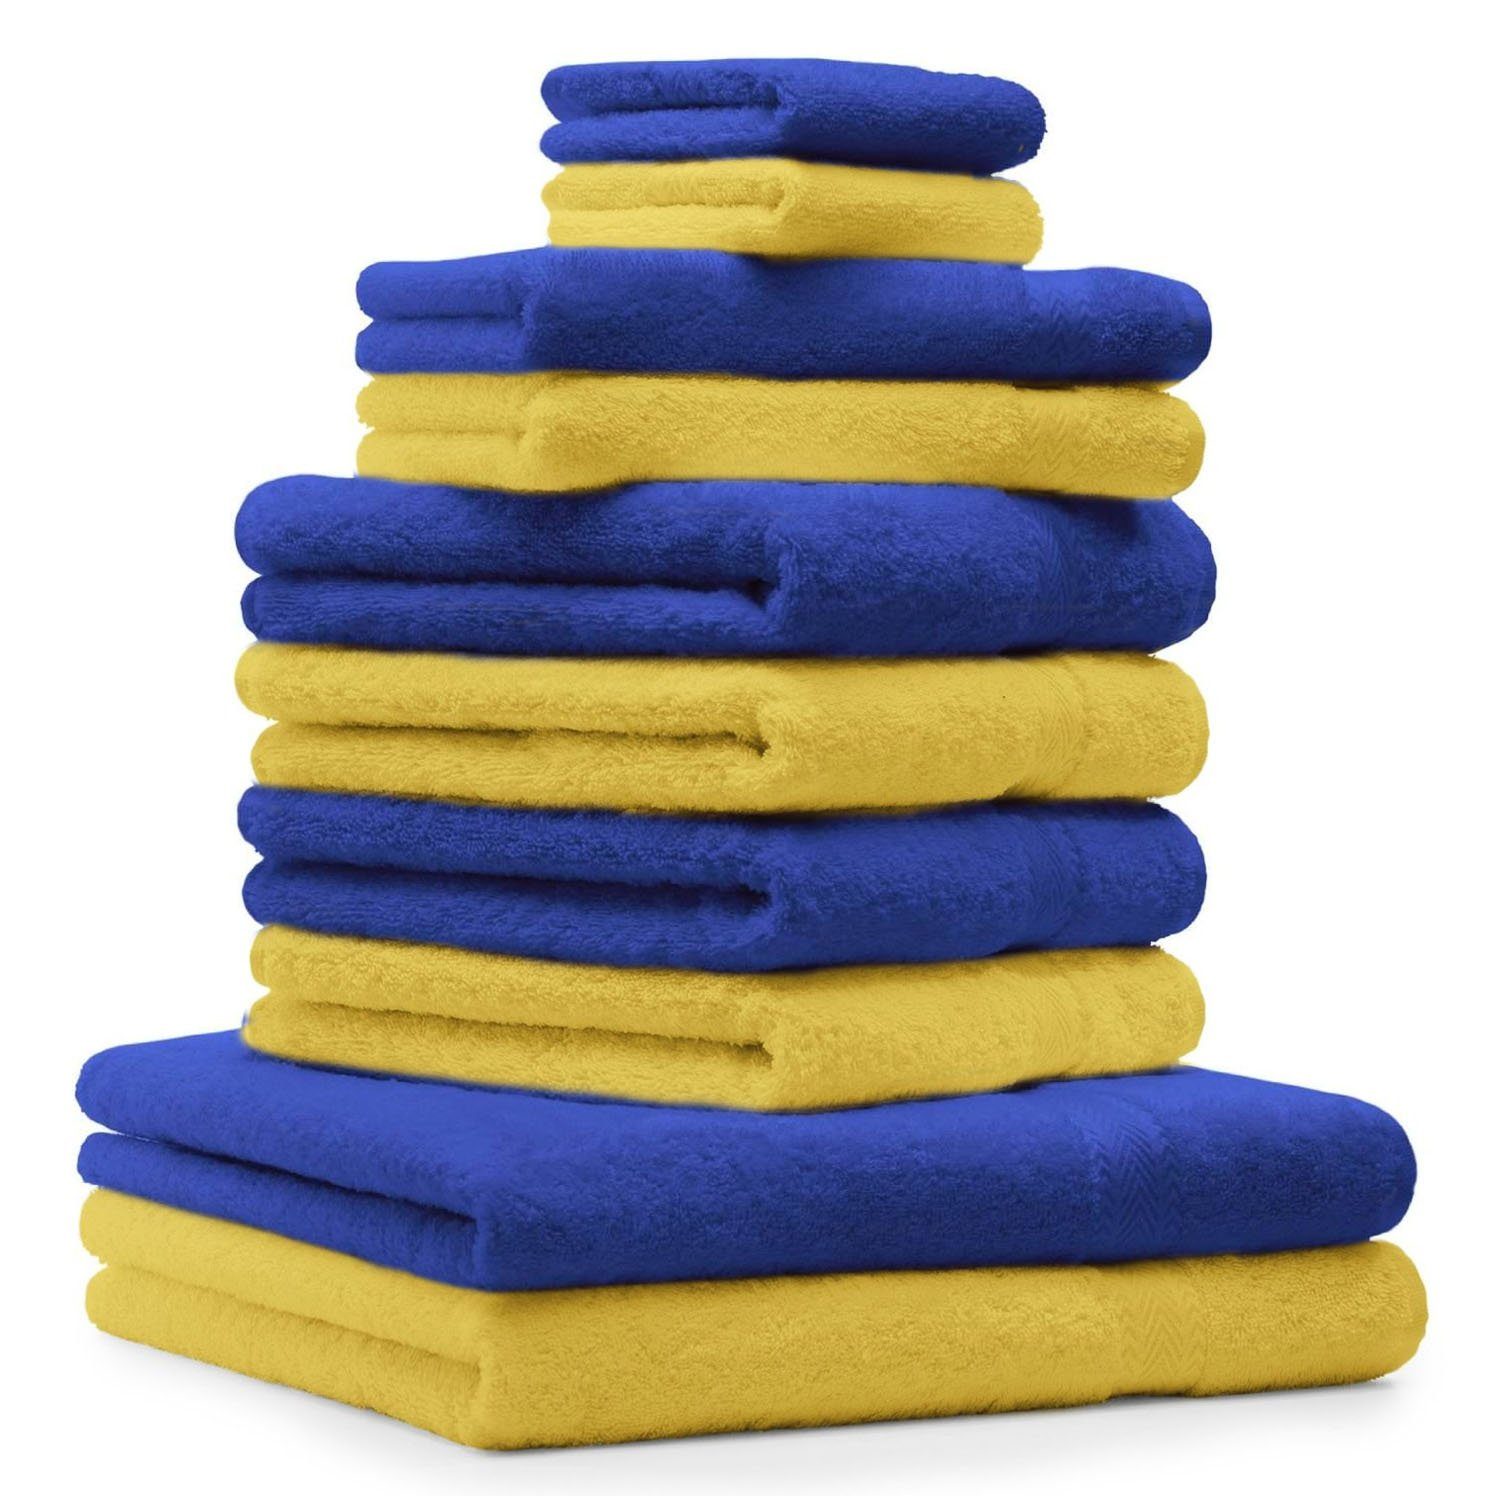 Betz Handtuch Set 10-TLG. Handtuch-Set Premium Farbe Royalblau & Gelb, 100% Baumwolle, (10-tlg)